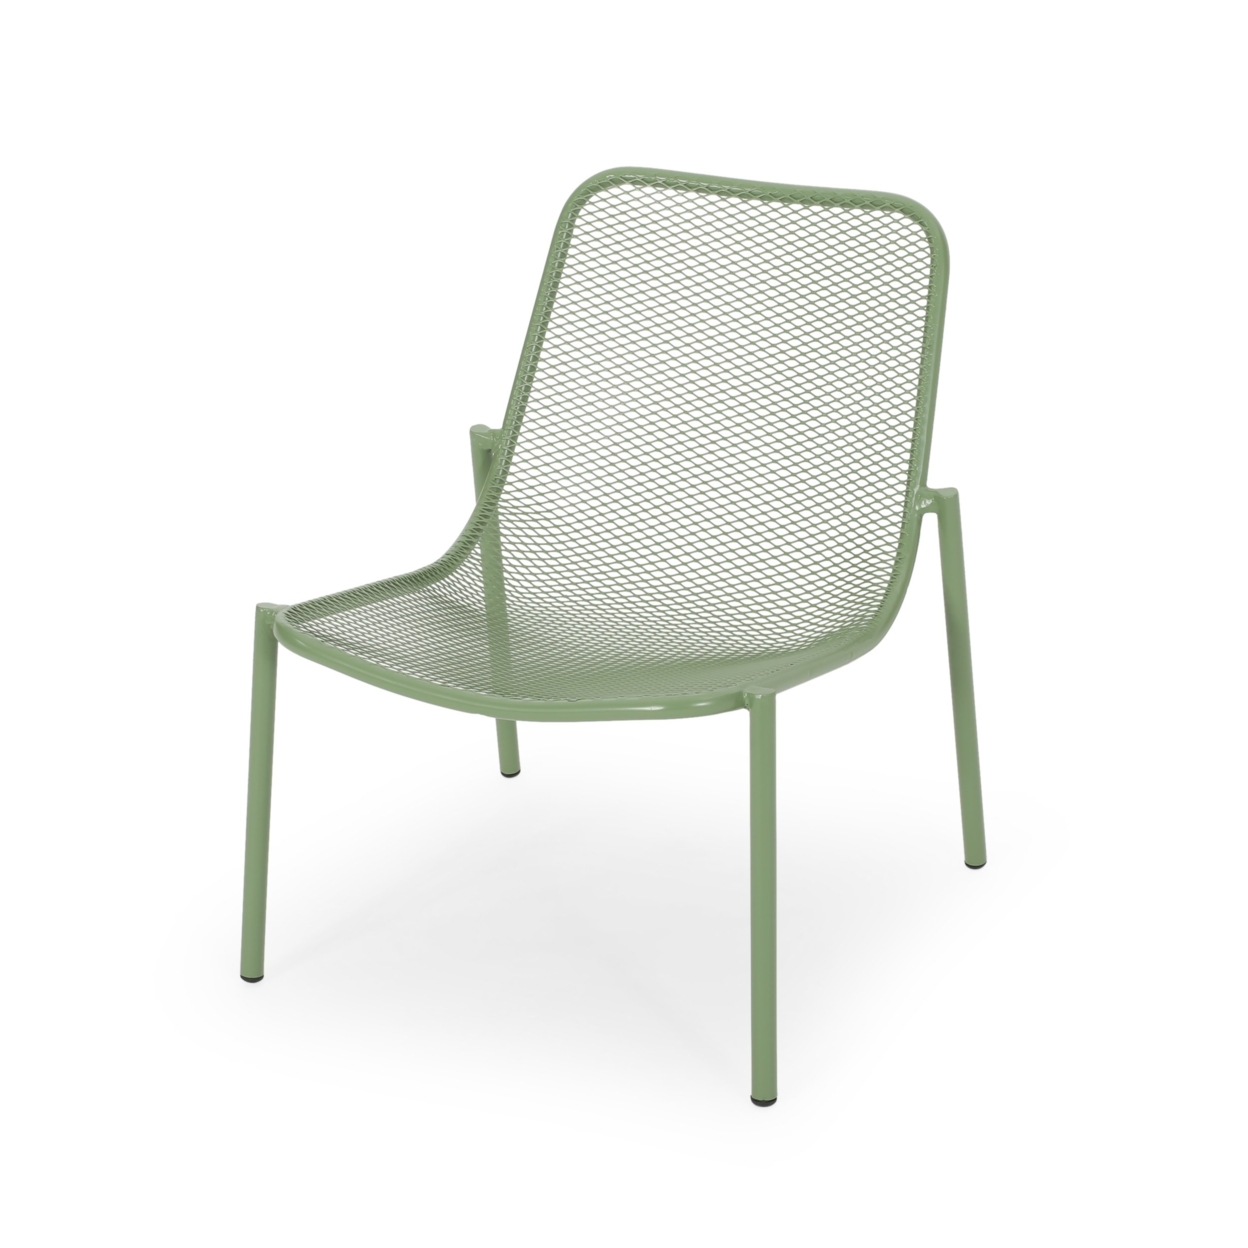 Brenner Outdoor Modern 2 Seater Chat Set - Matte Green